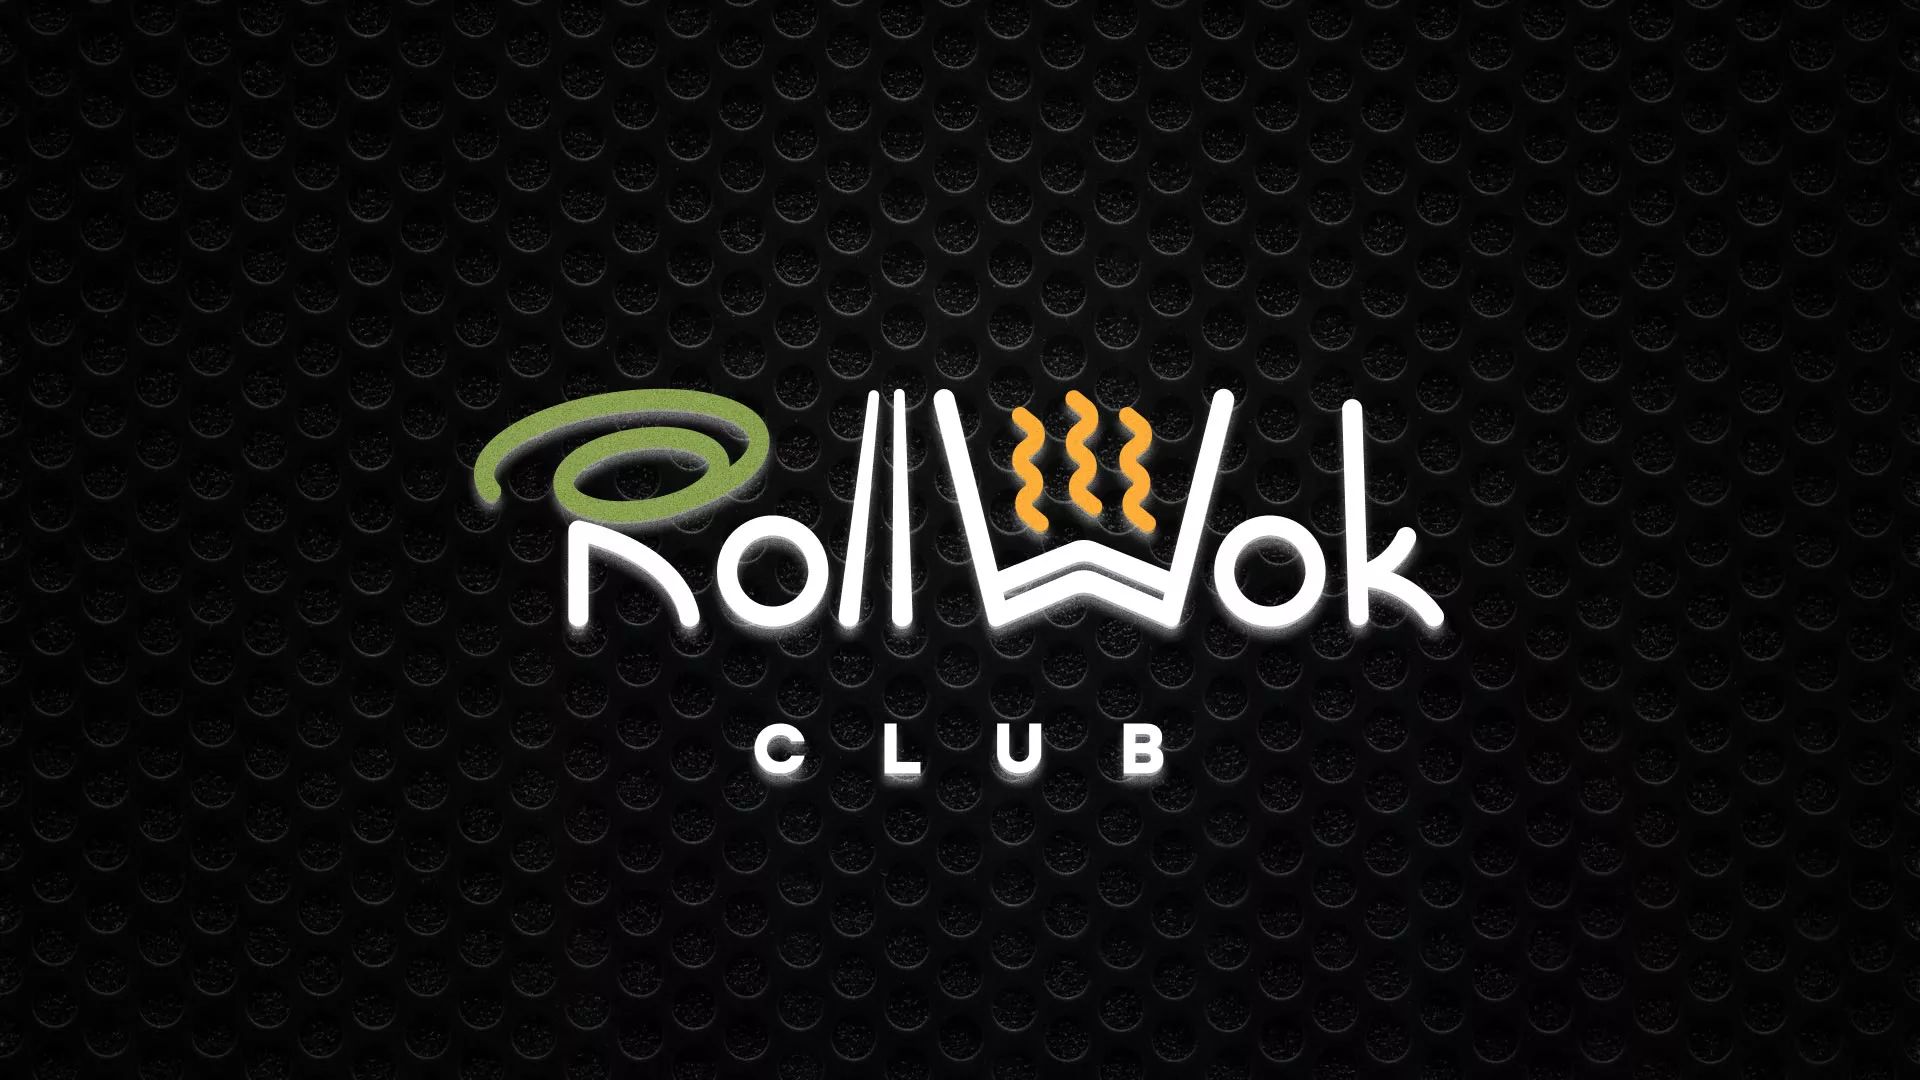 Брендирование торговых точек суши-бара «Roll Wok Club» в Пушкине